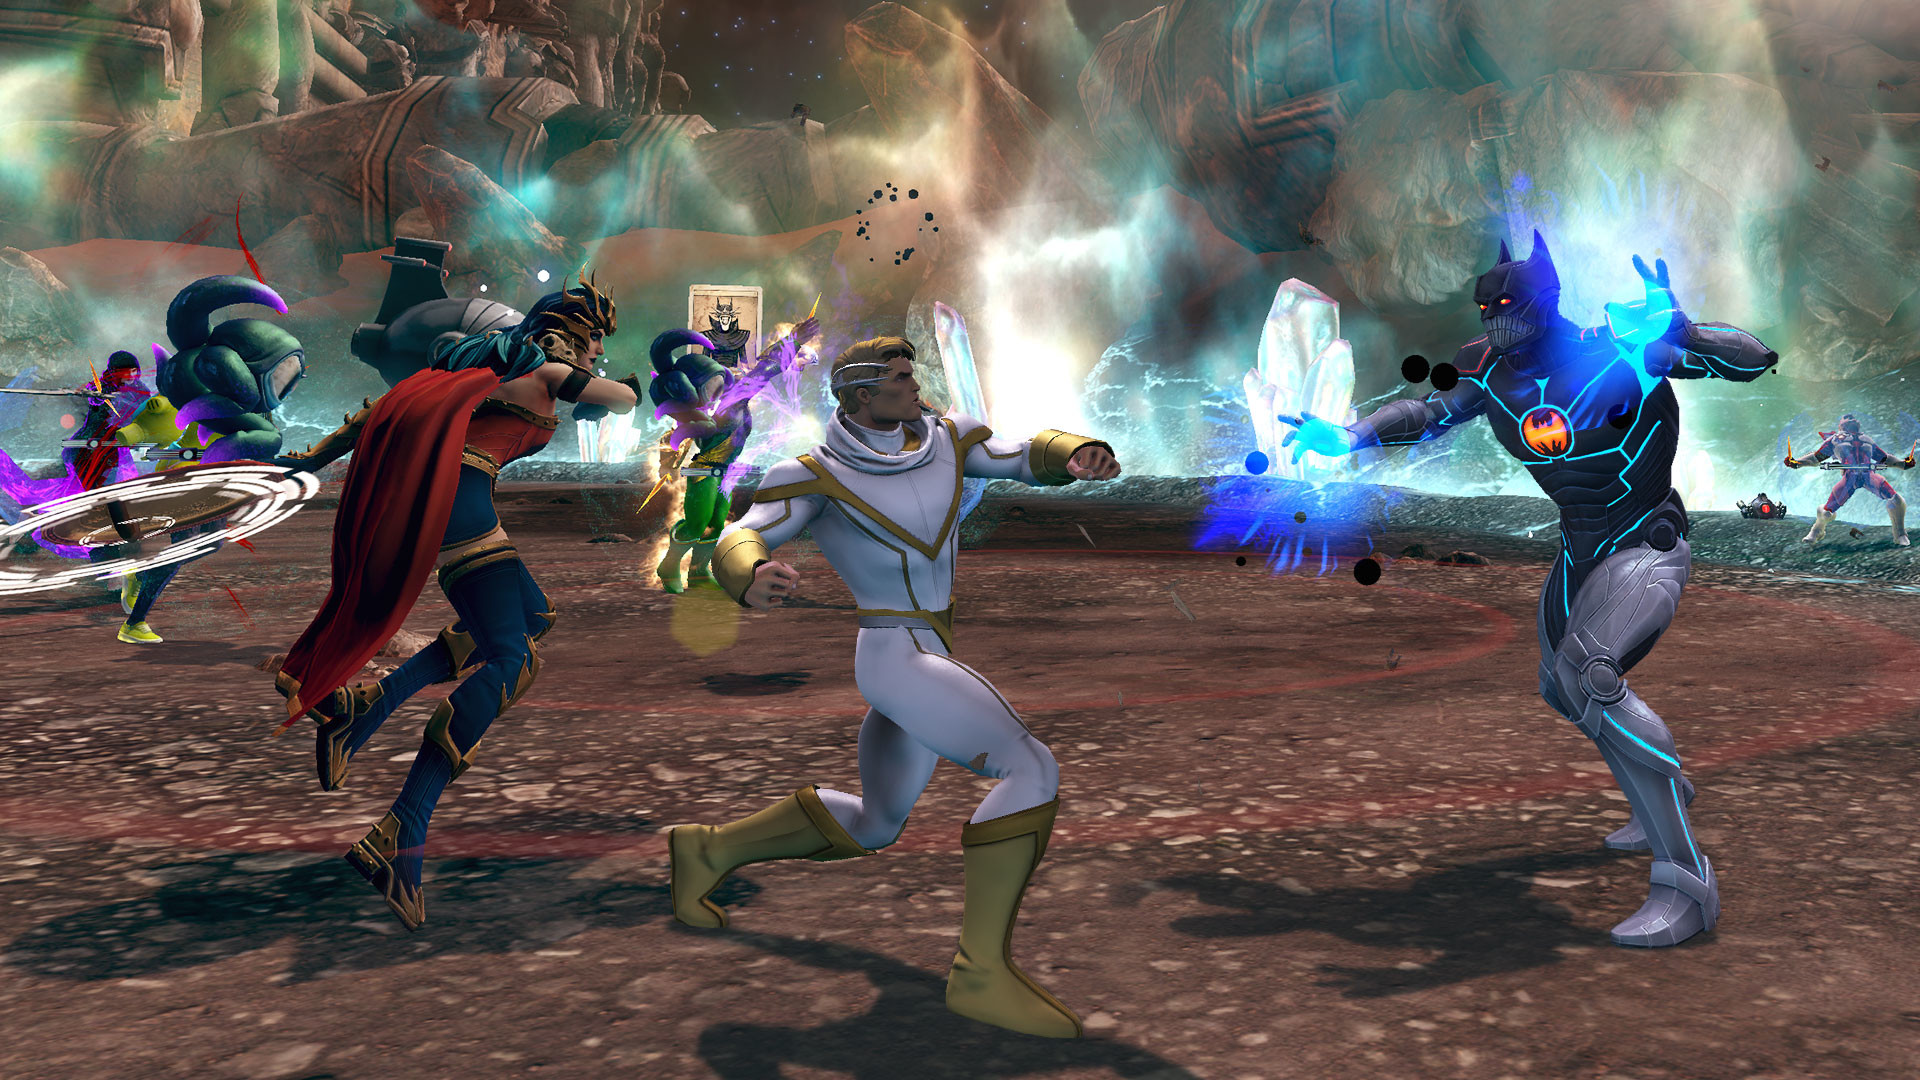 DC Universe Online: game passa a ser free-to-play em outubro para PS3 e PC  - Arkade